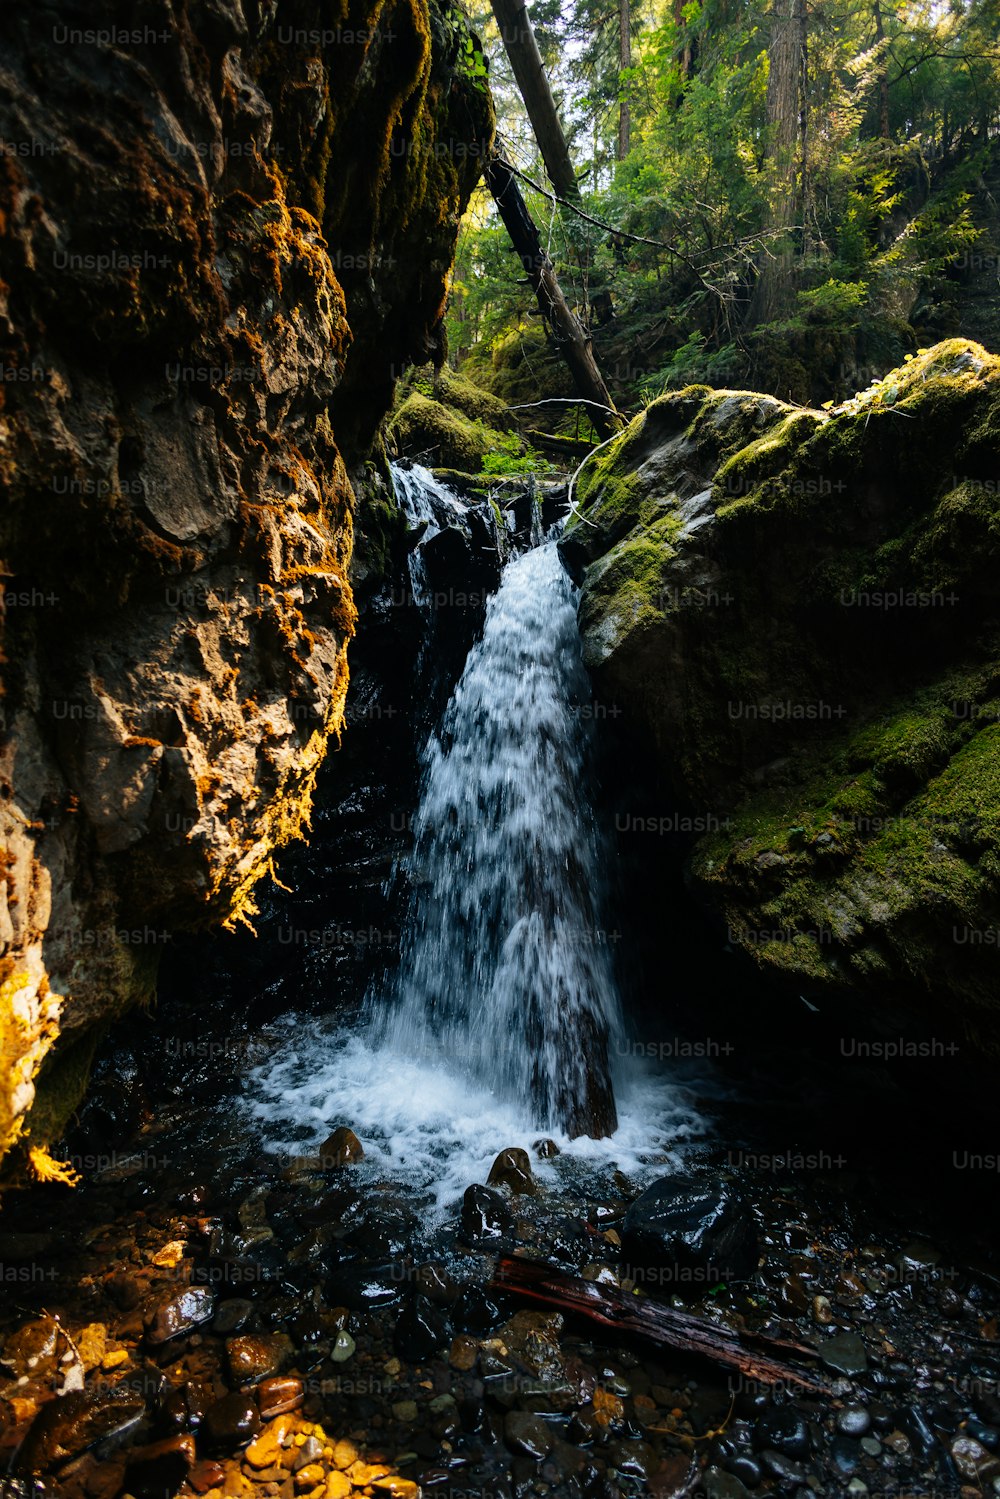 Un flusso d'acqua che attraversa una foresta